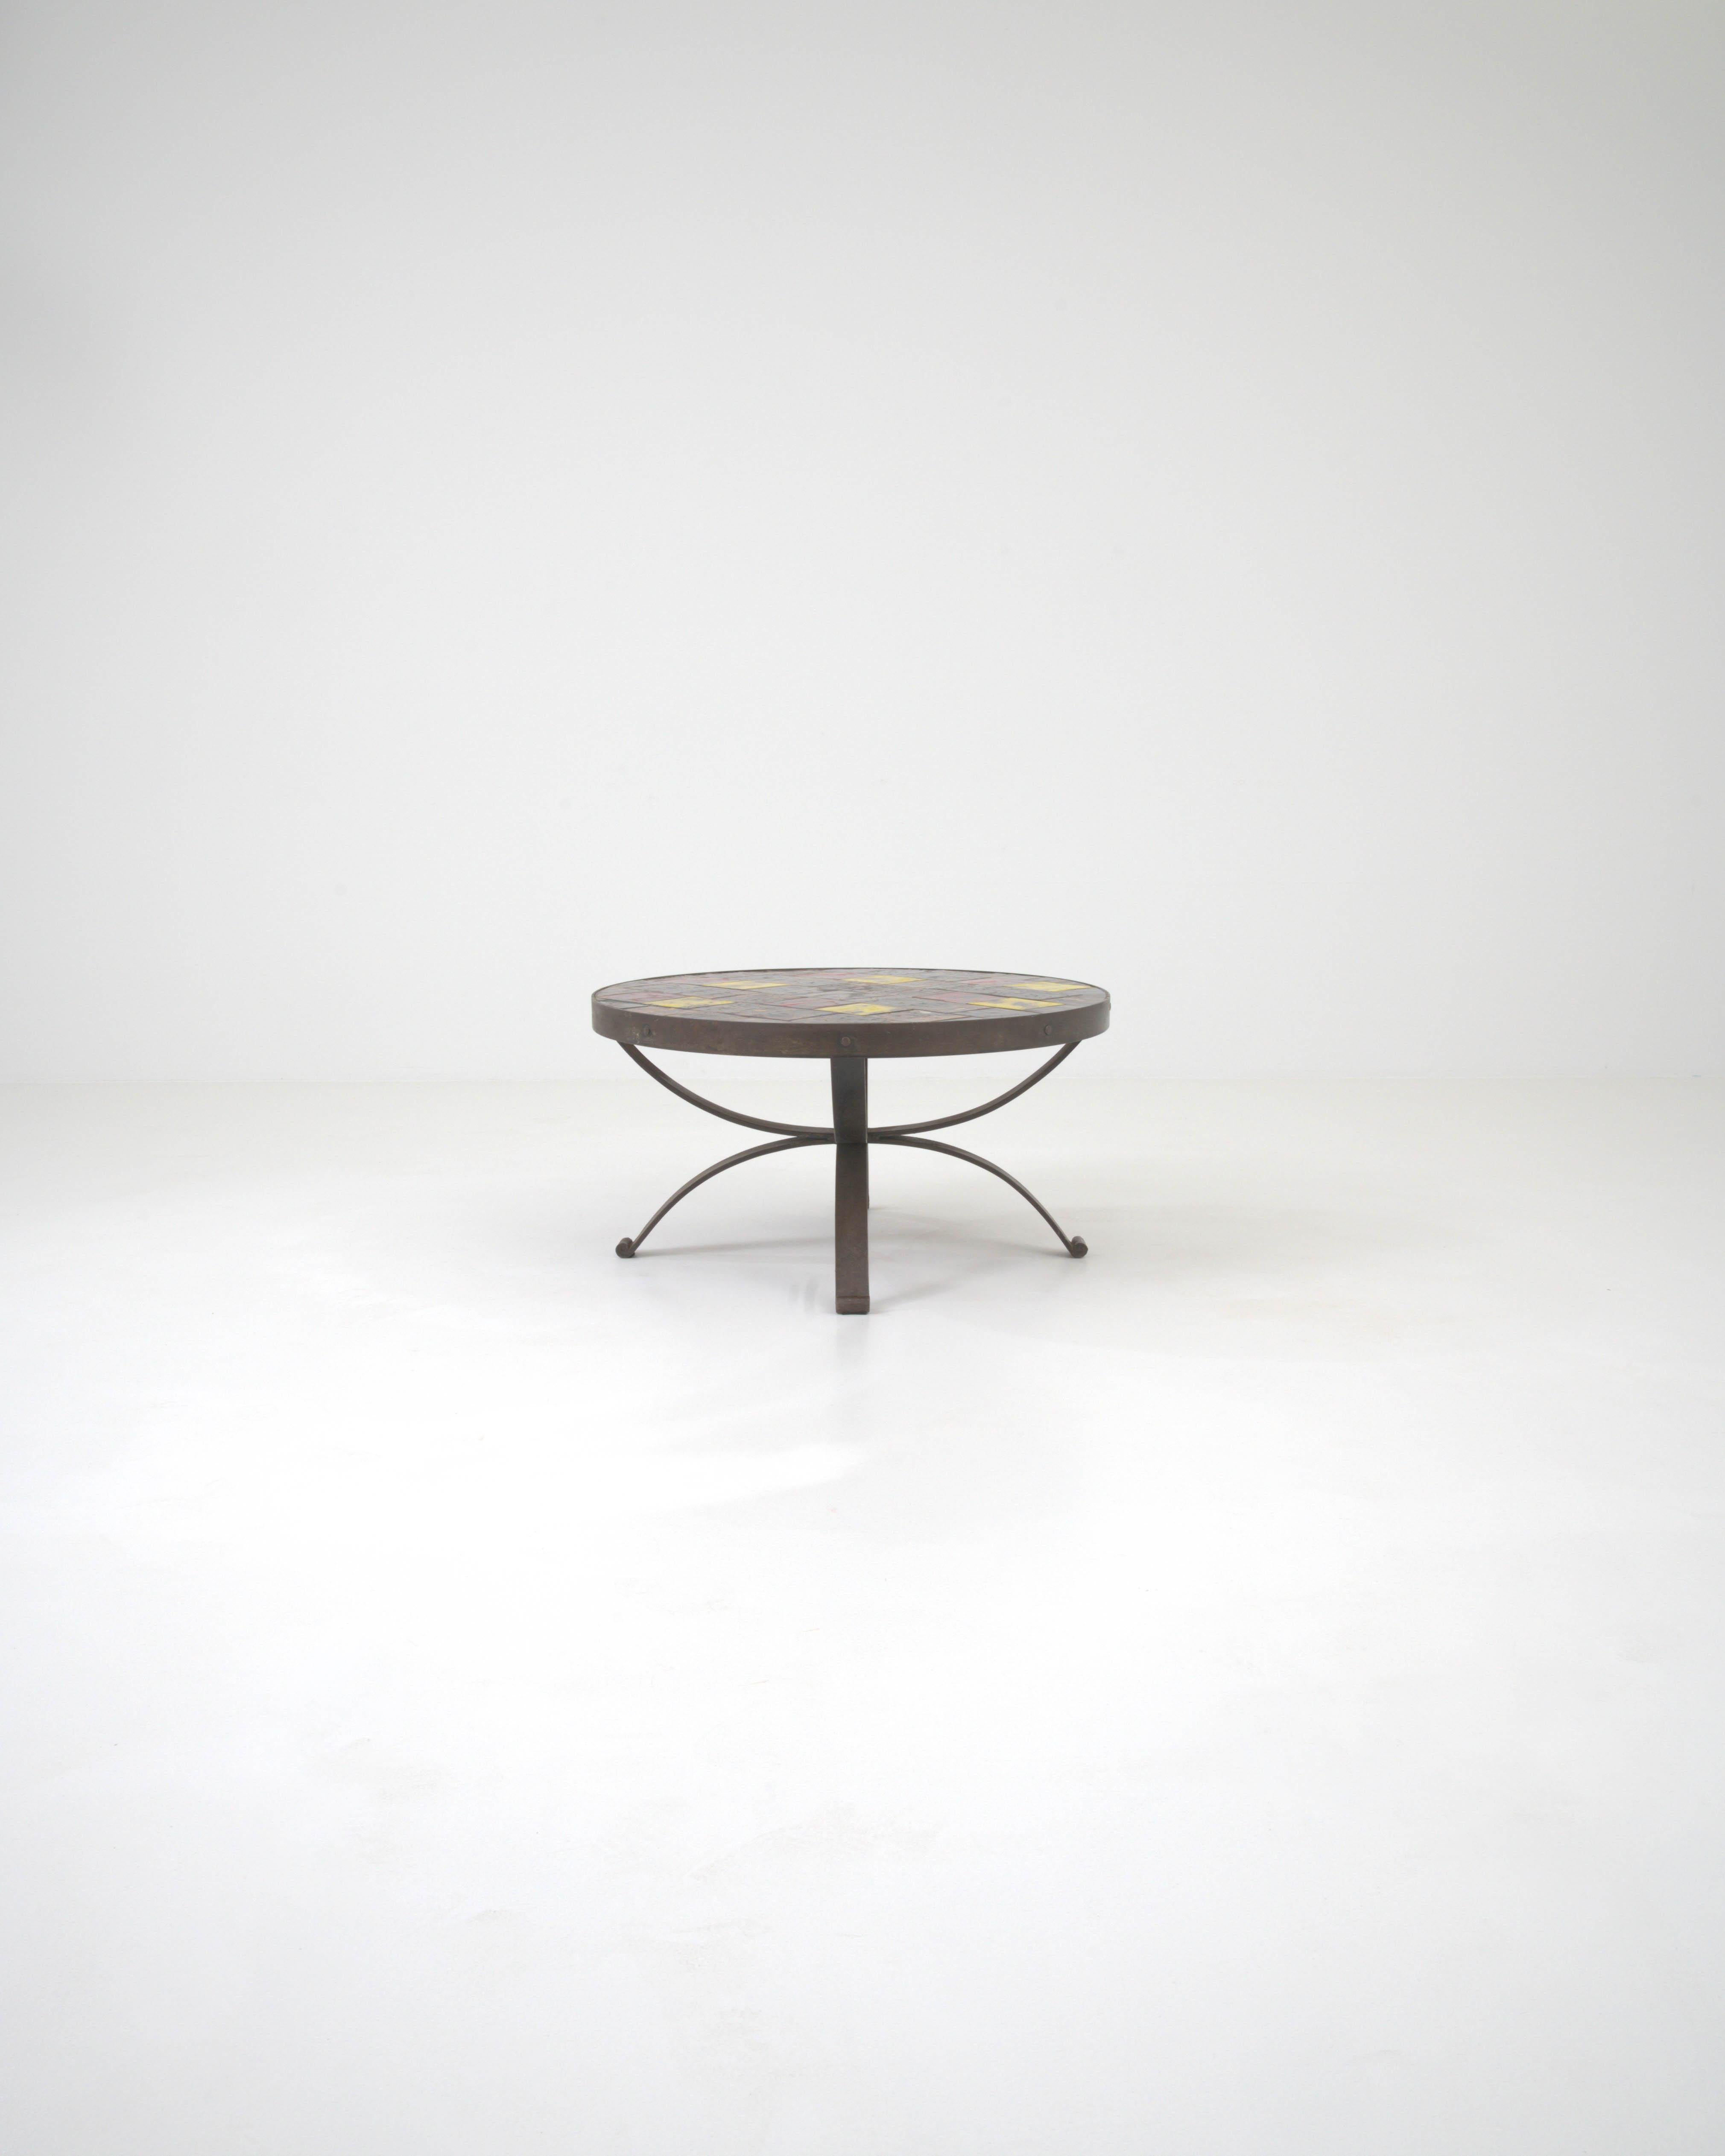 Découvrez la quintessence du charme du milieu du siècle avec cette élégante table basse française en métal, parfaite pour apporter une touche d'allure vintage à votre espace de vie. La base métallique robuste, aux courbes gracieuses, témoigne du